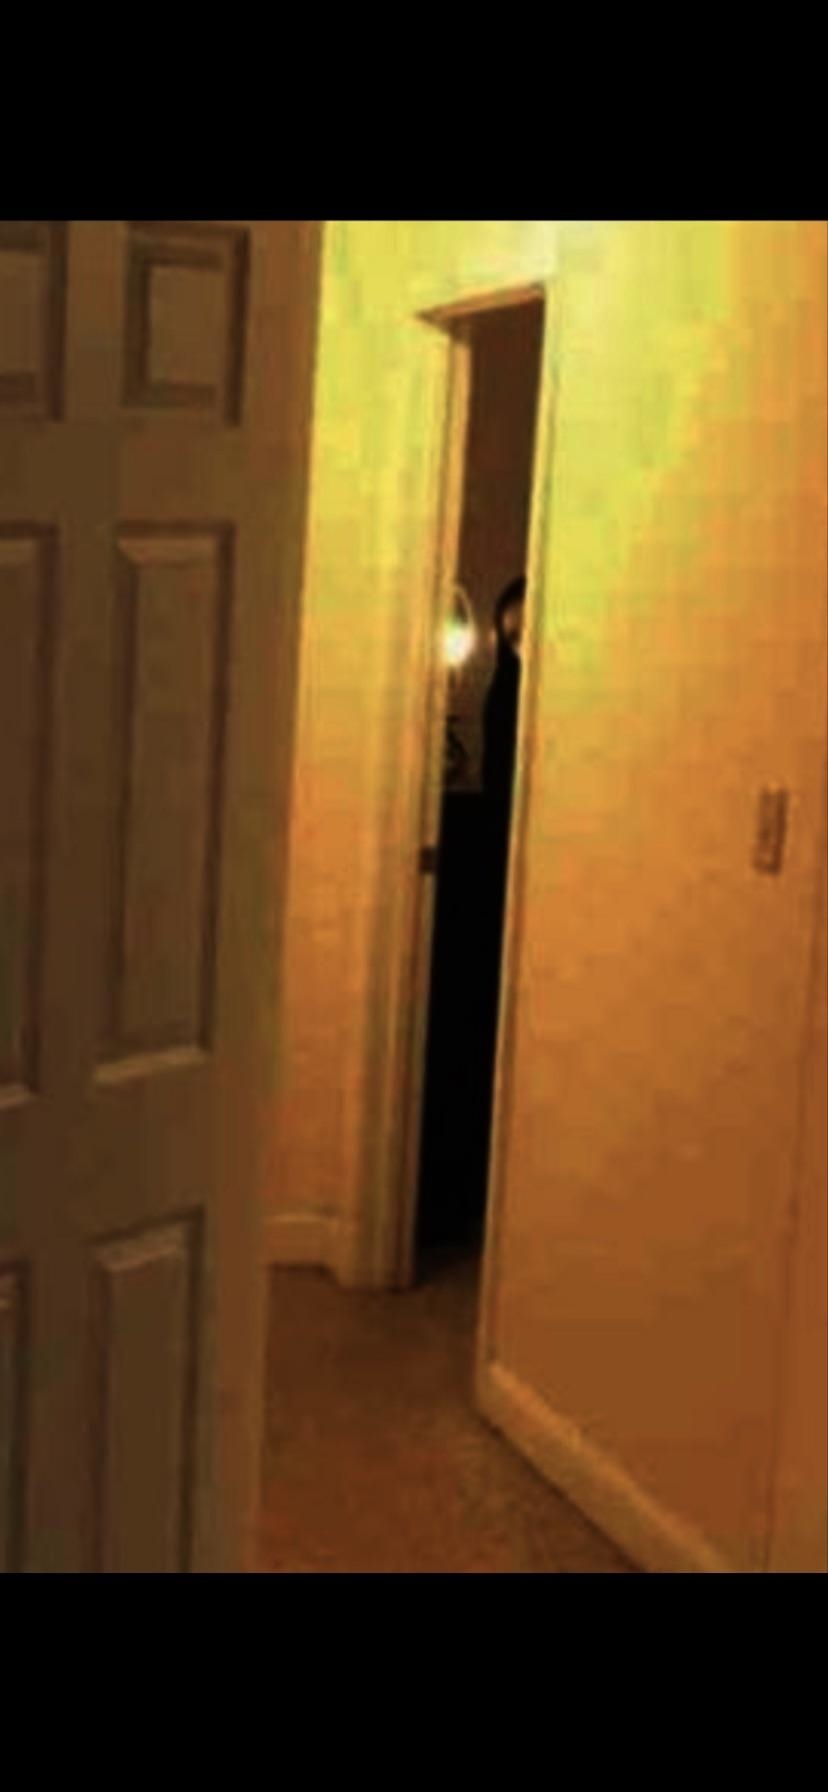 a figure in a doorway